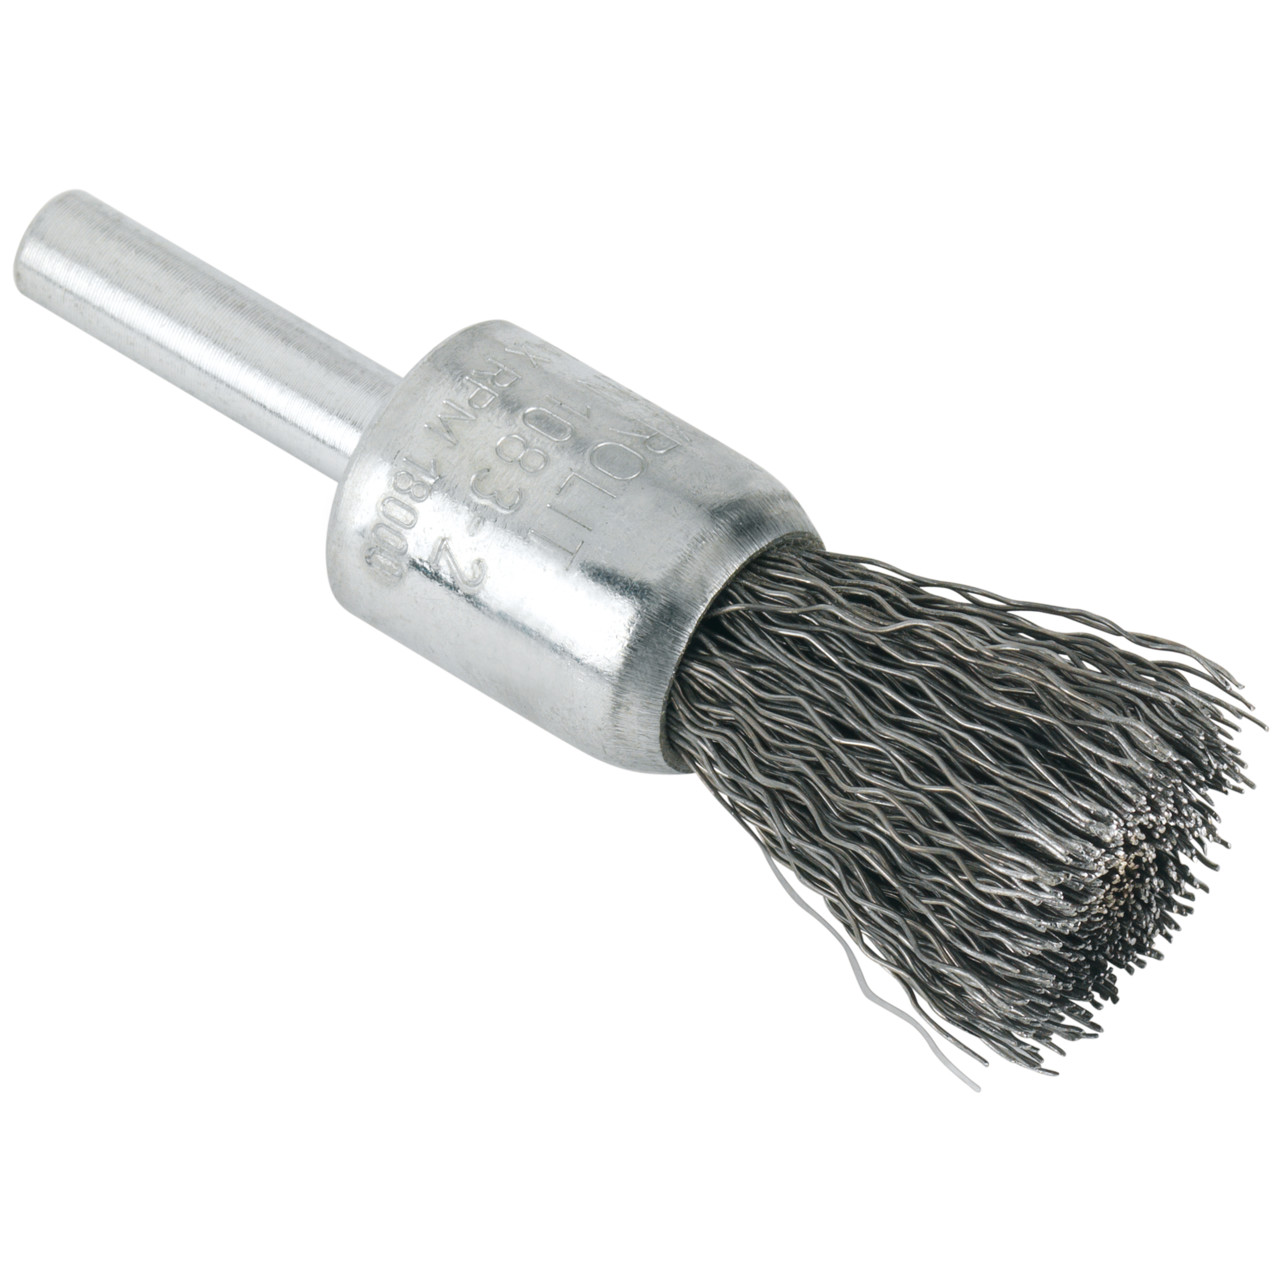 Spazzole Tyrolit DxH-GExI 30x25-6x68 Per acciaio, forma: 52PDW - (spazzole), Art. 58293